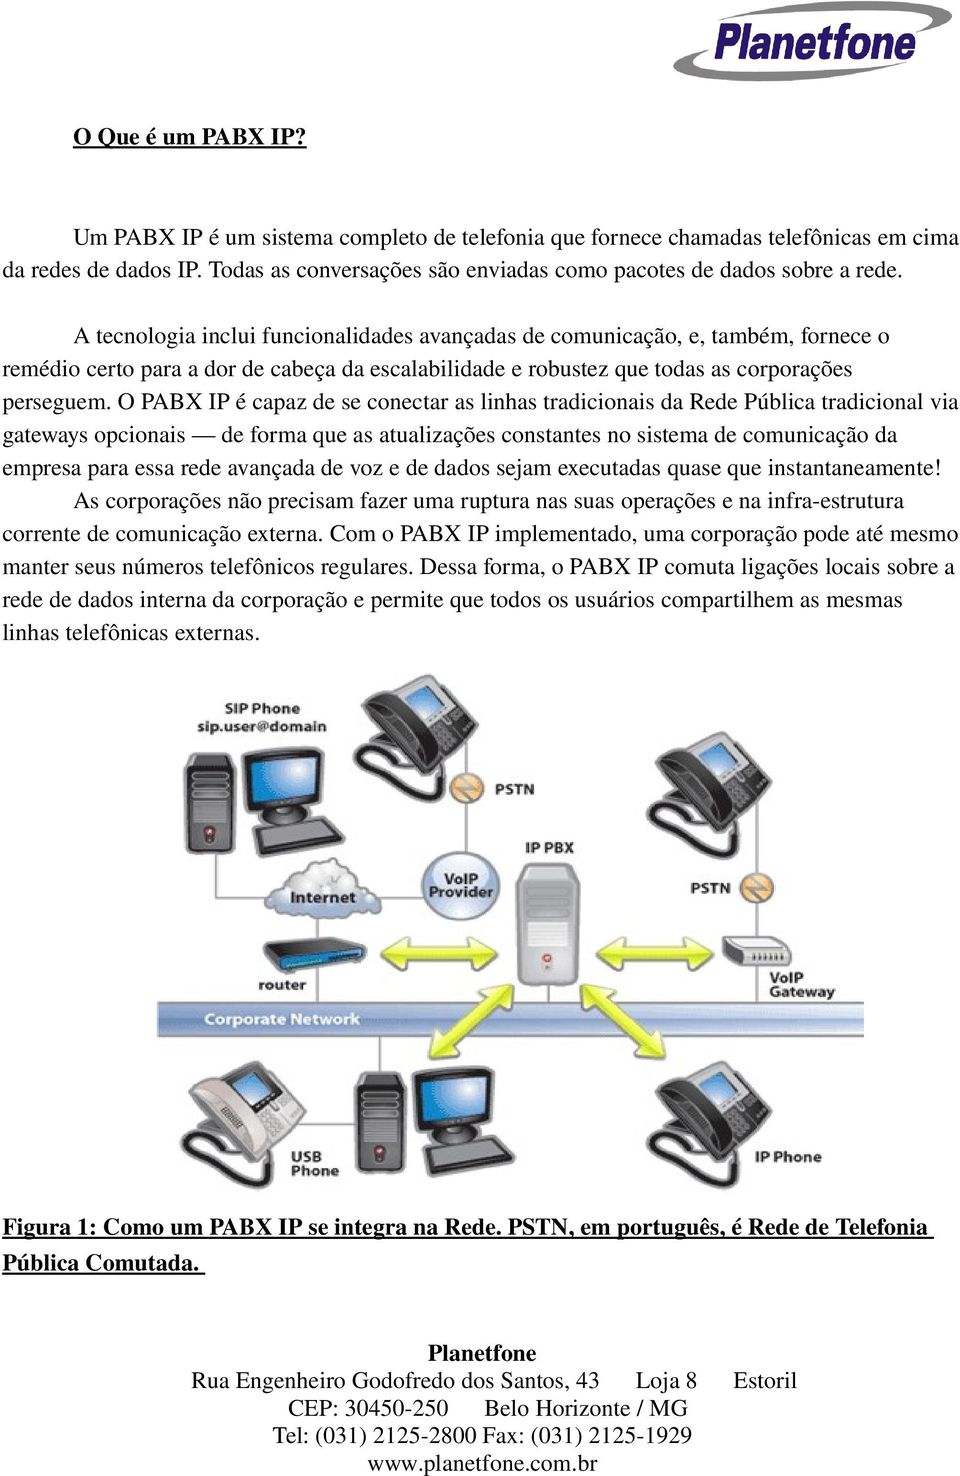 O PABX IP é capaz de se conectar as linhas tradicionais da Rede Pública tradicional via gateways opcionais de forma que as atualizações constantes no sistema de comunicação da empresa para essa rede